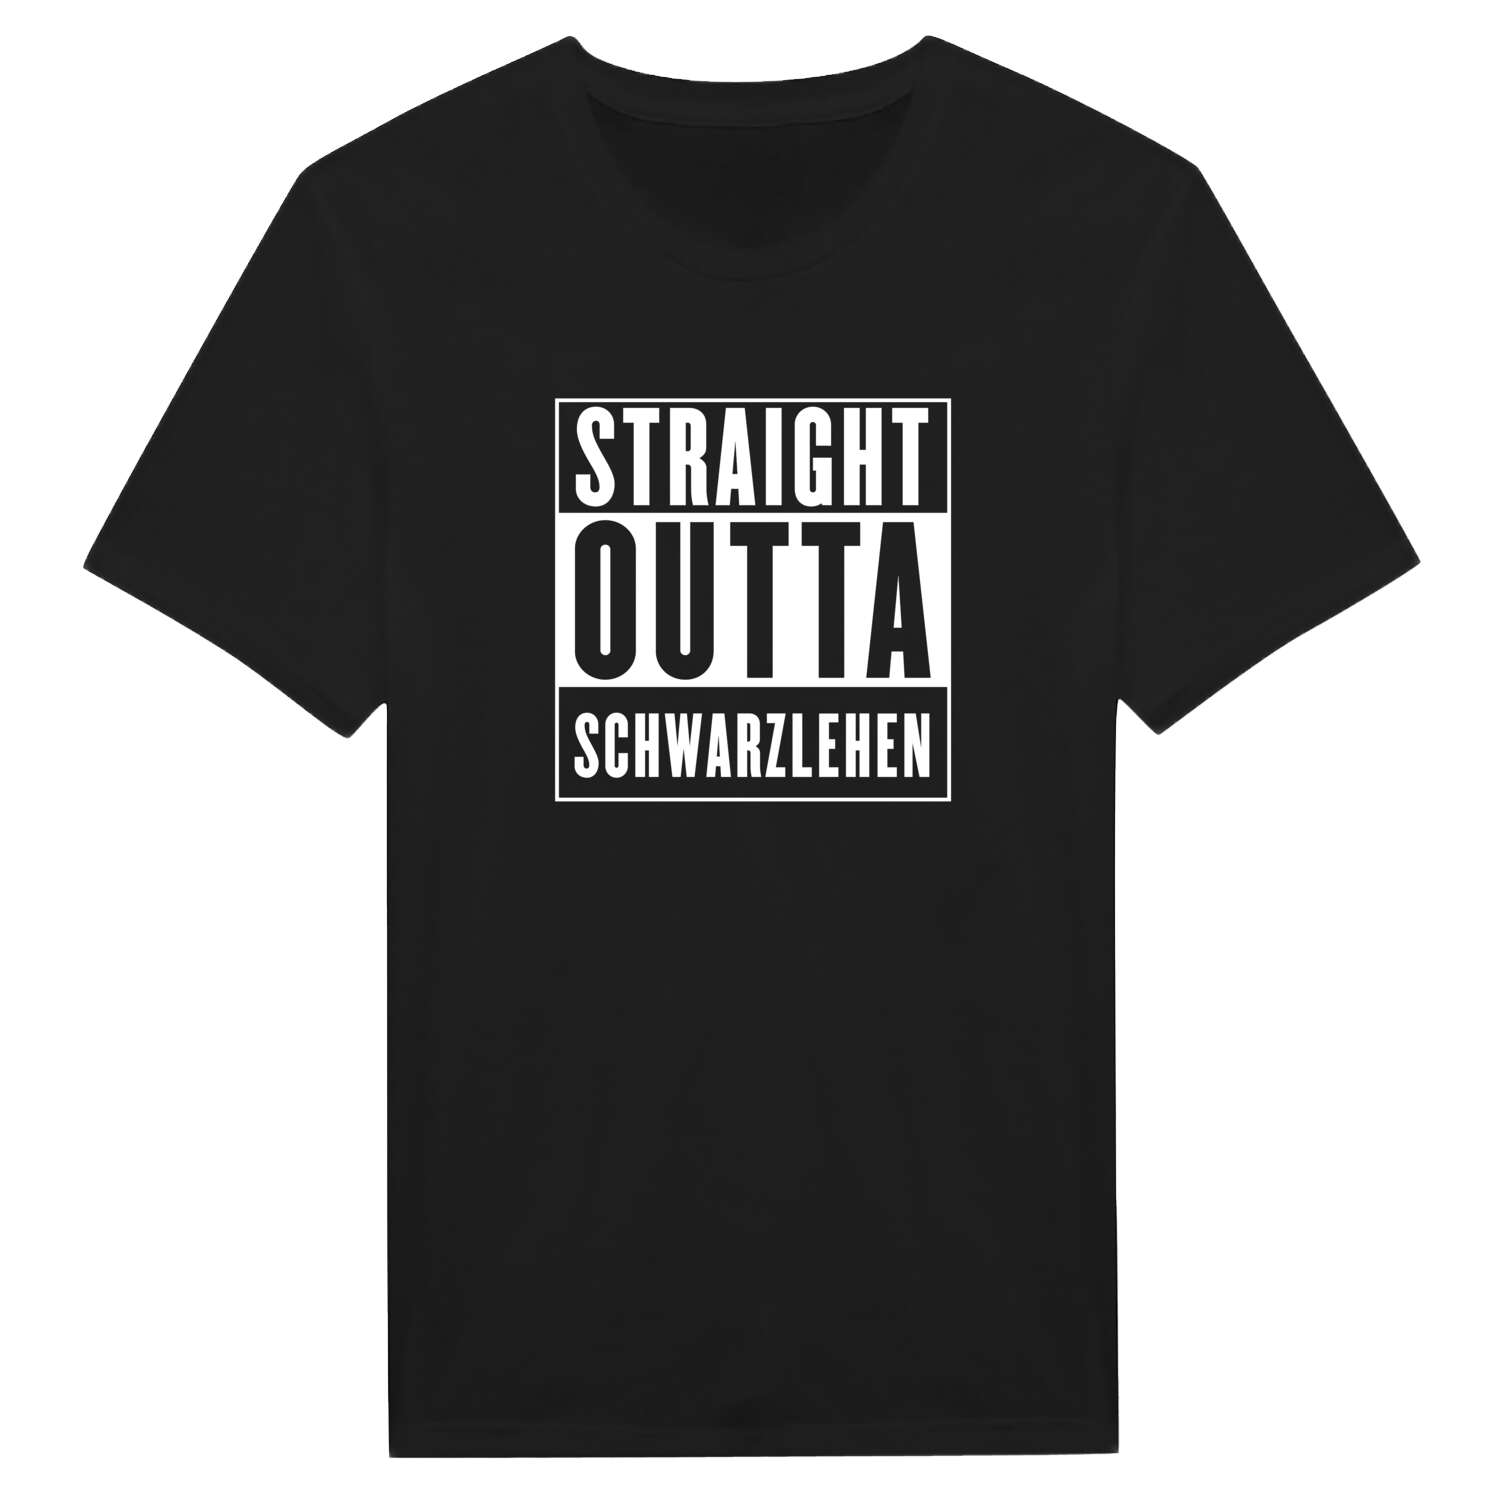 Schwarzlehen T-Shirt »Straight Outta«